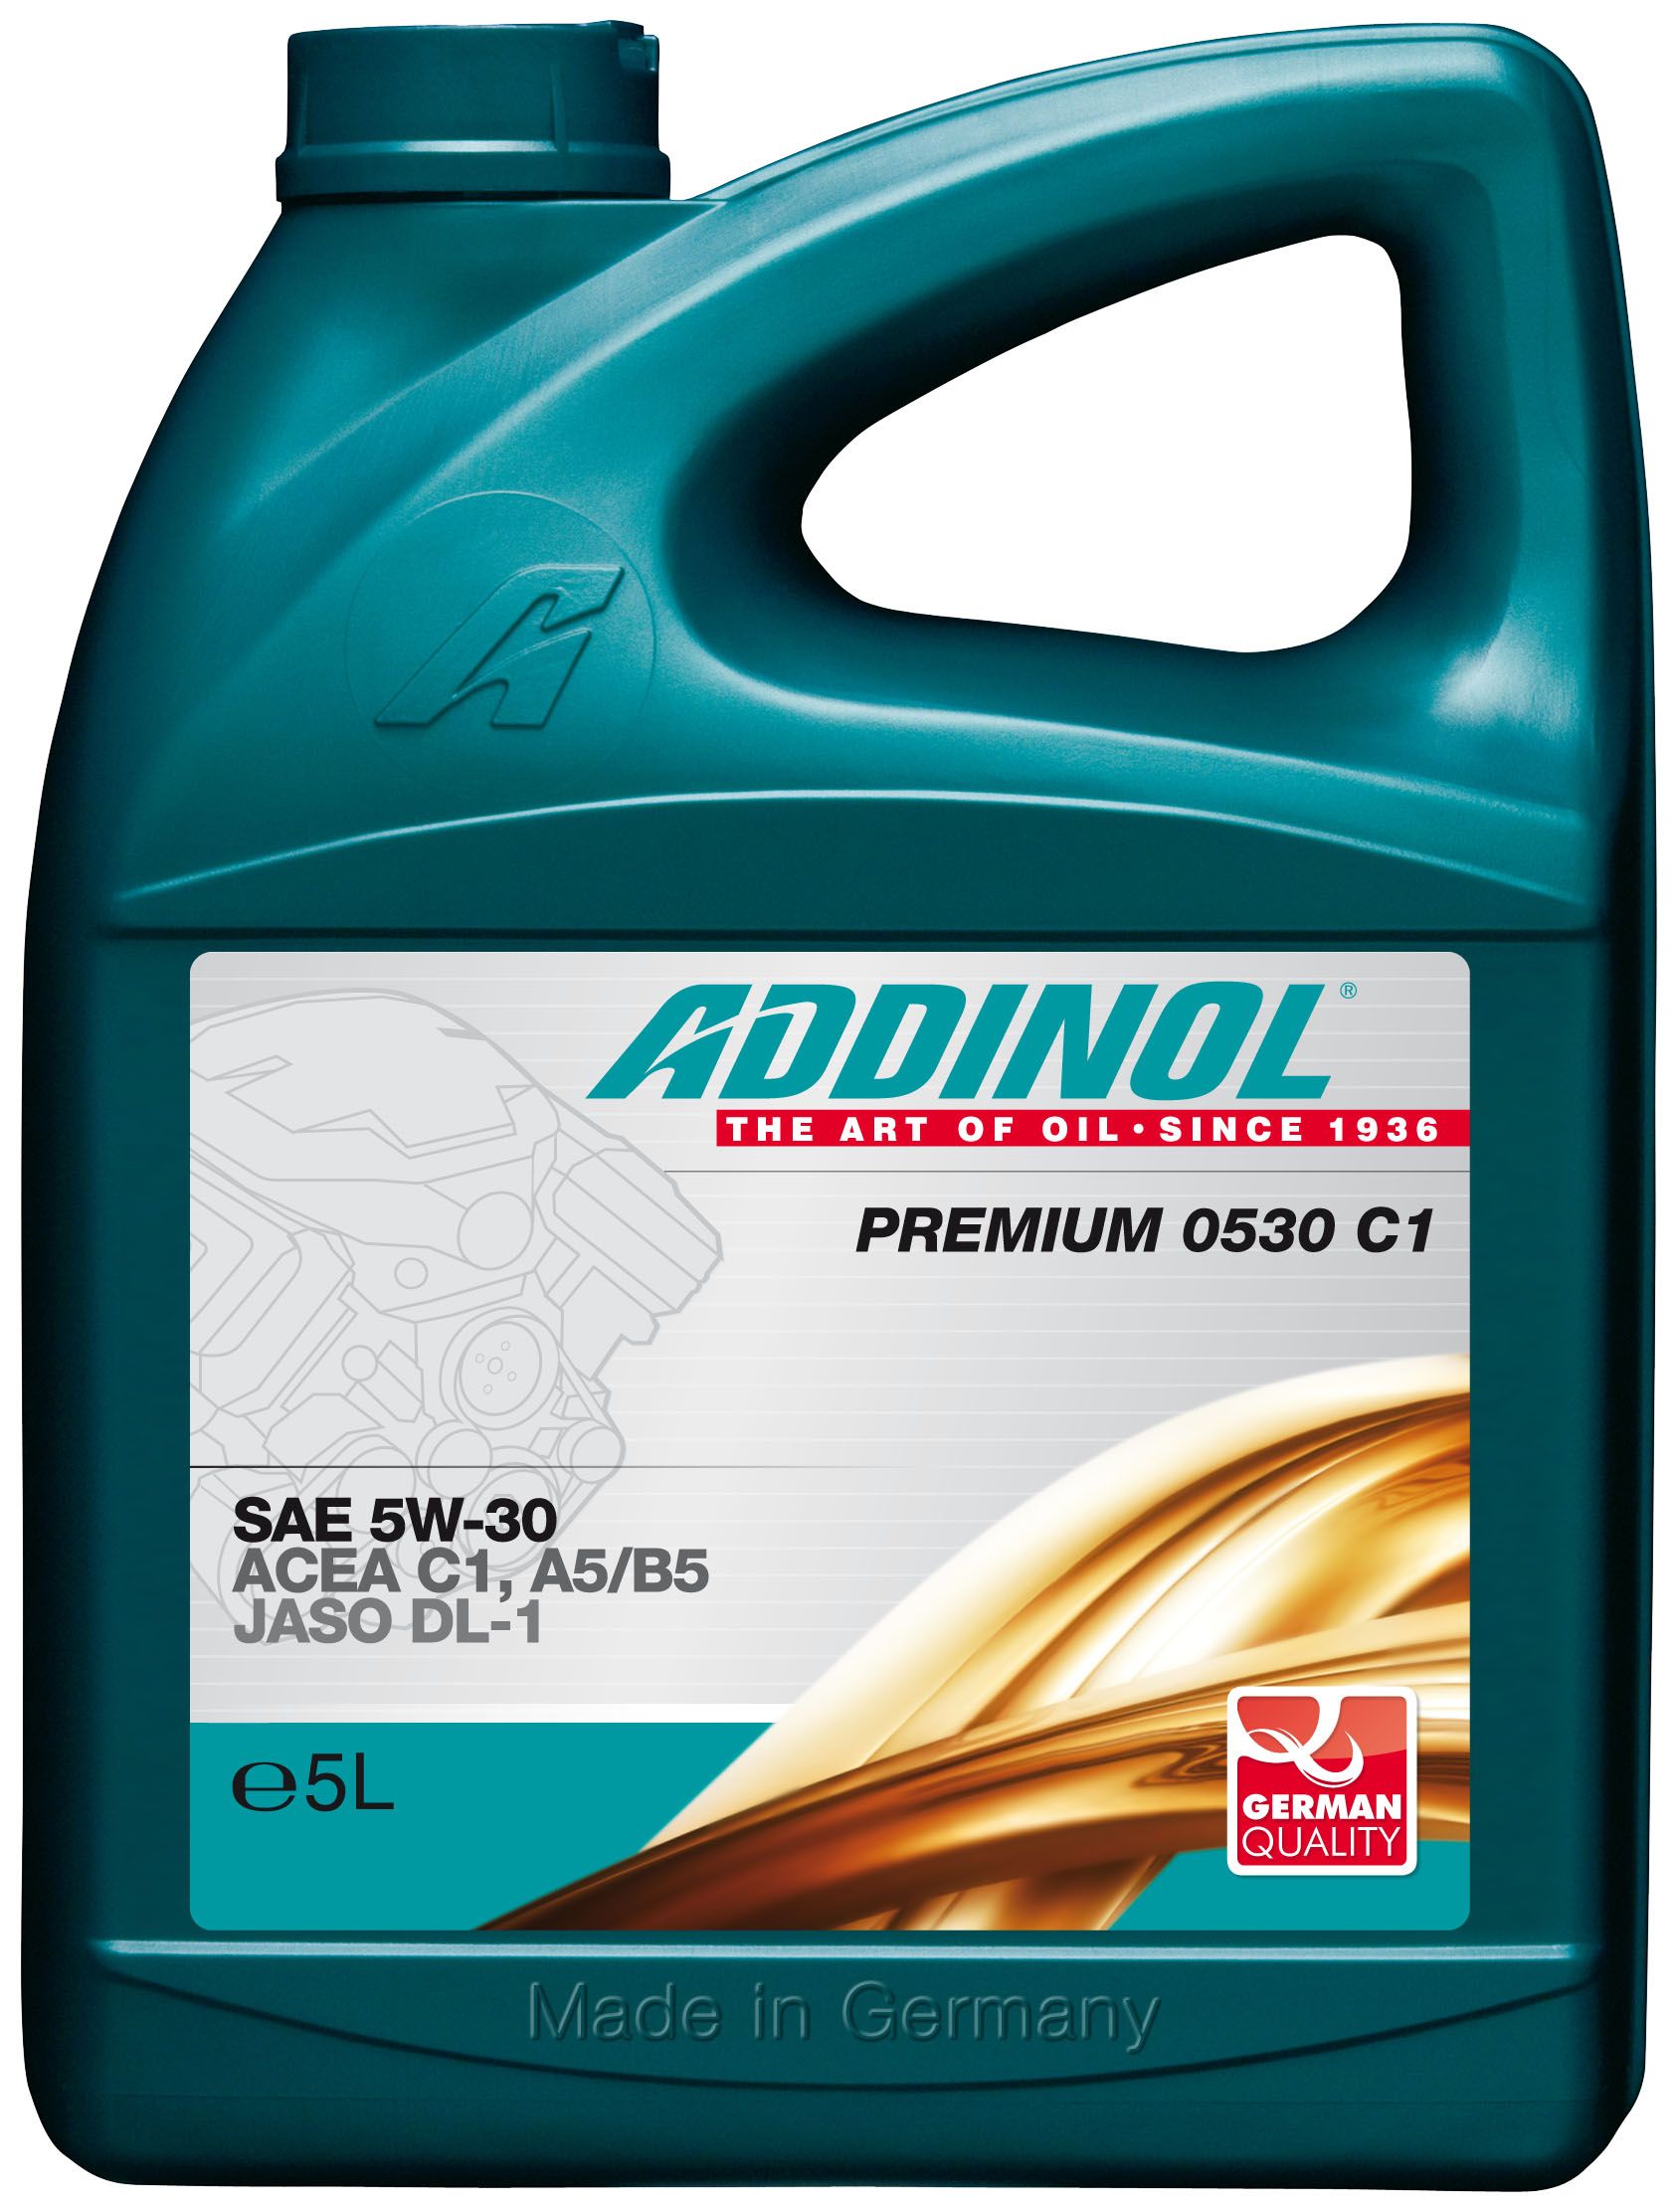 Addinol 4014766241108 масло моторное синтетическое "Giga Light (Motorenol) MV 0530 ll 5w-30", 5л. Addinol Premium 0530 c3-DX 5w-30 5л. Addinol Diesel Longlife MD 1548 (SAE 15w-40). Addinol Semi Synth 1040. Производители масел для двигателя